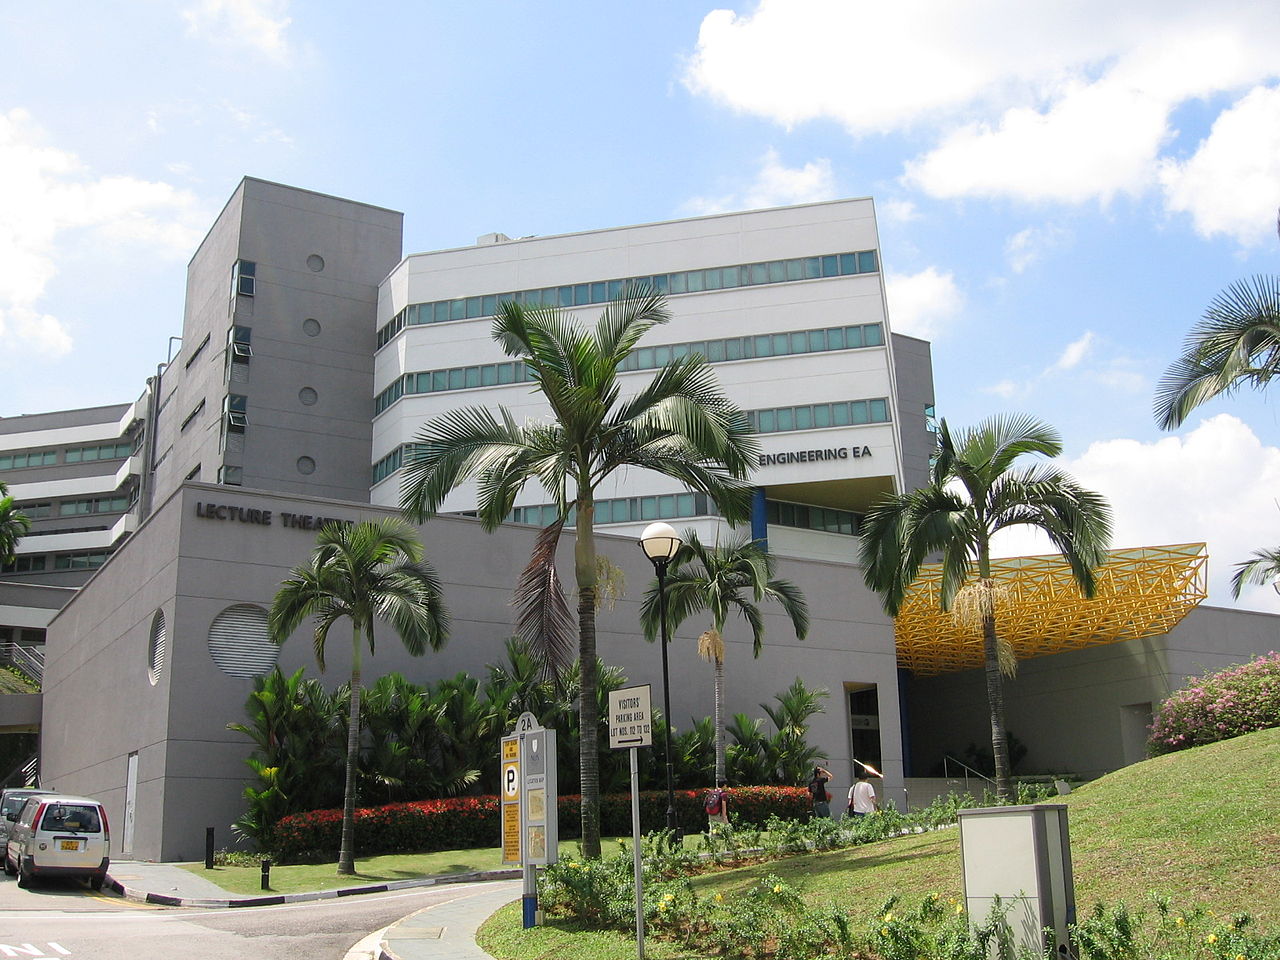 Viện Đại học Quốc gia Singapore hay Đại học Quốc gia Singapore, thường được gọi tắt là NUS, là viện đại học xưa nhất và lớn nhất về số lượng sinh viên tại Singapore